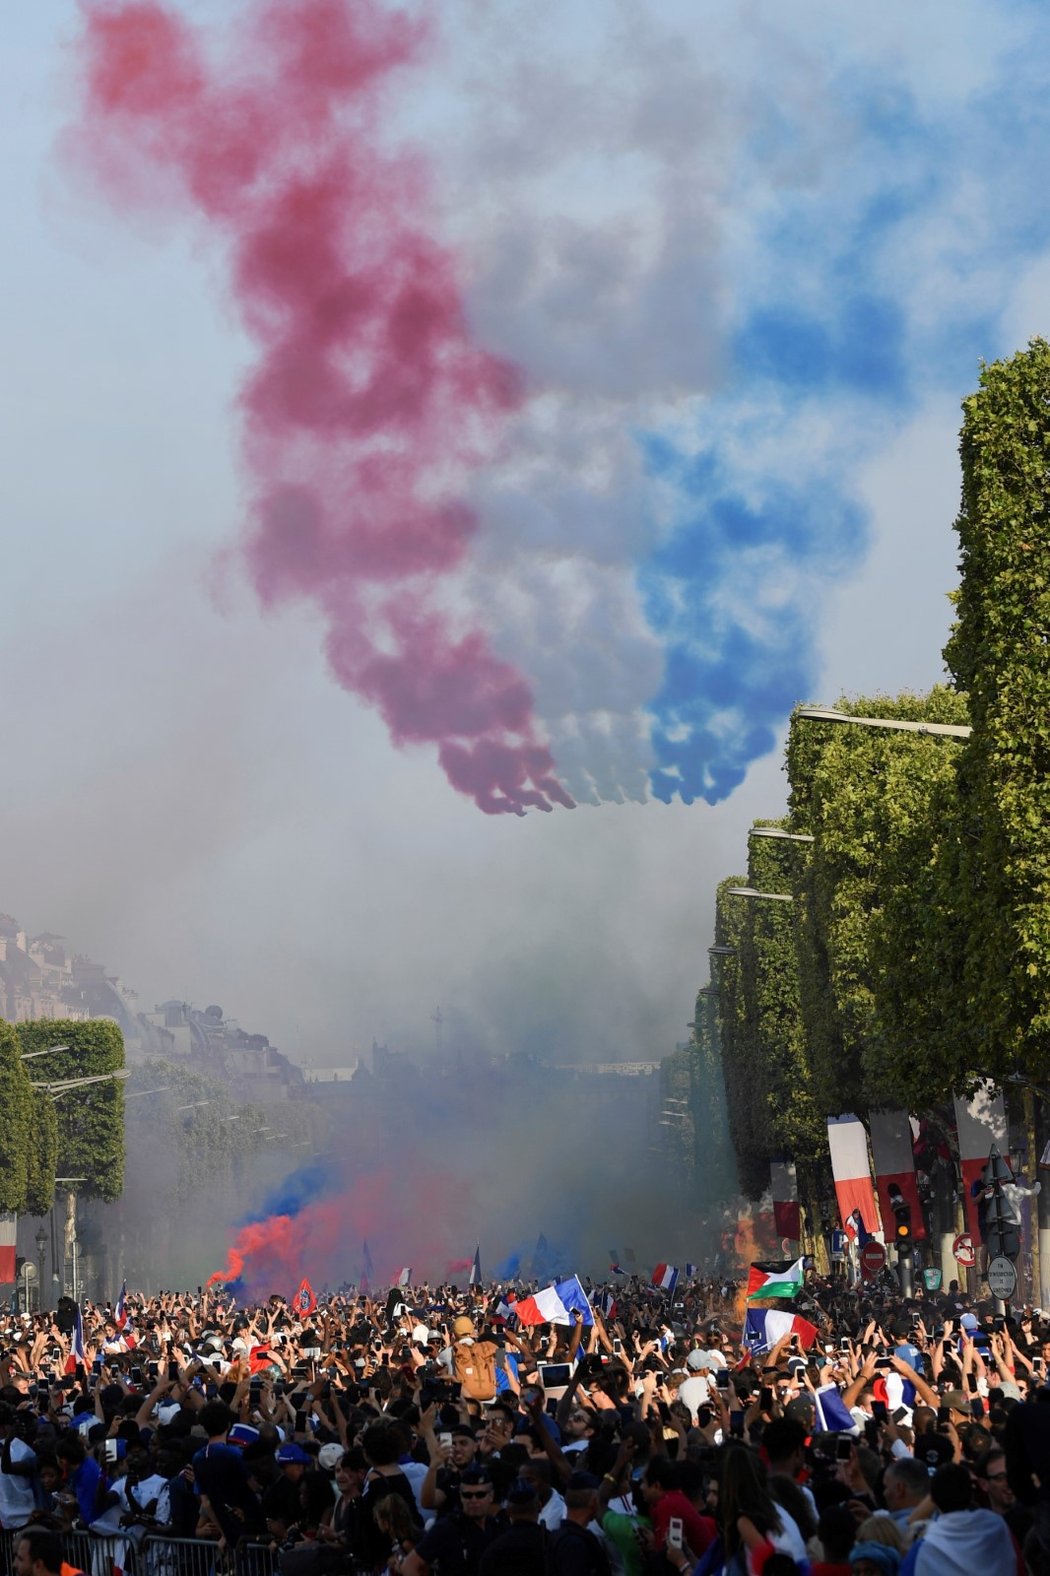 Stíhačky vytvořily pomocí dýmu nad hlavami fanoušků barvy francouzské vlajky